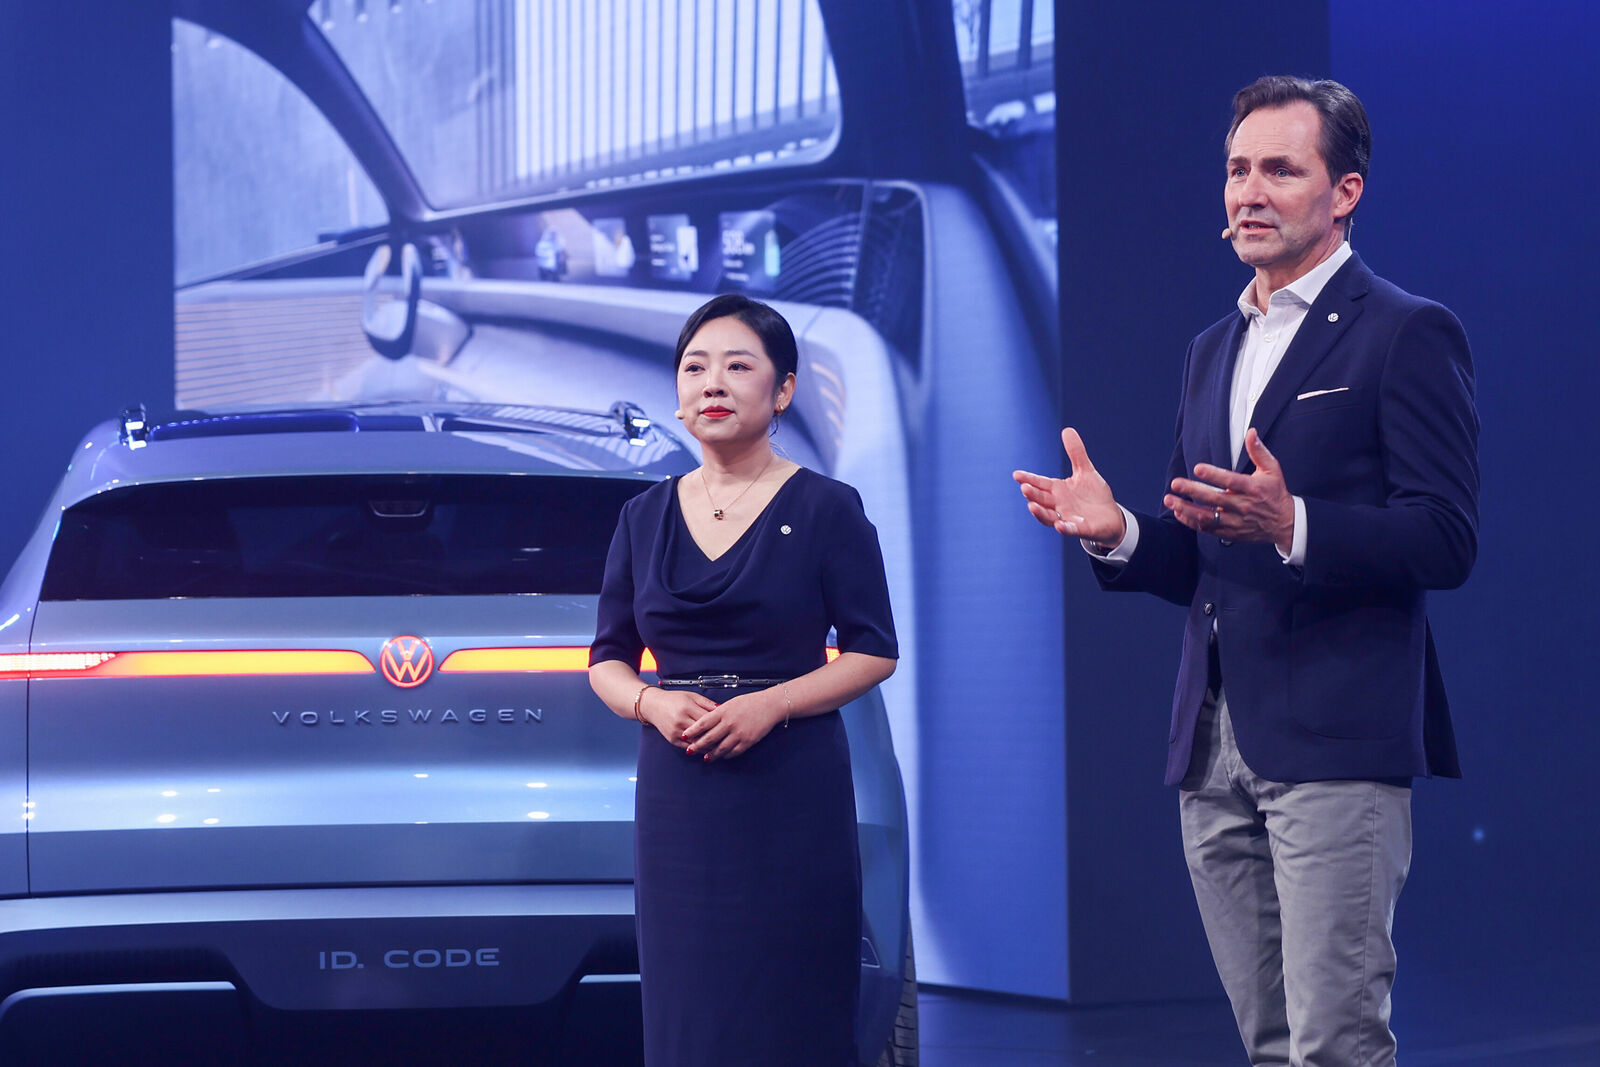 Zwei Moderatoren, eine Frau und ein Mann, stehen selbstbewusst auf der Bühne vor einem metallisch-blauen Volkswagen ID. Code Konzept-SUV. Sie halten eine Präsentation über das Fahrzeug, gestikulieren und sprechen zum Publikum.